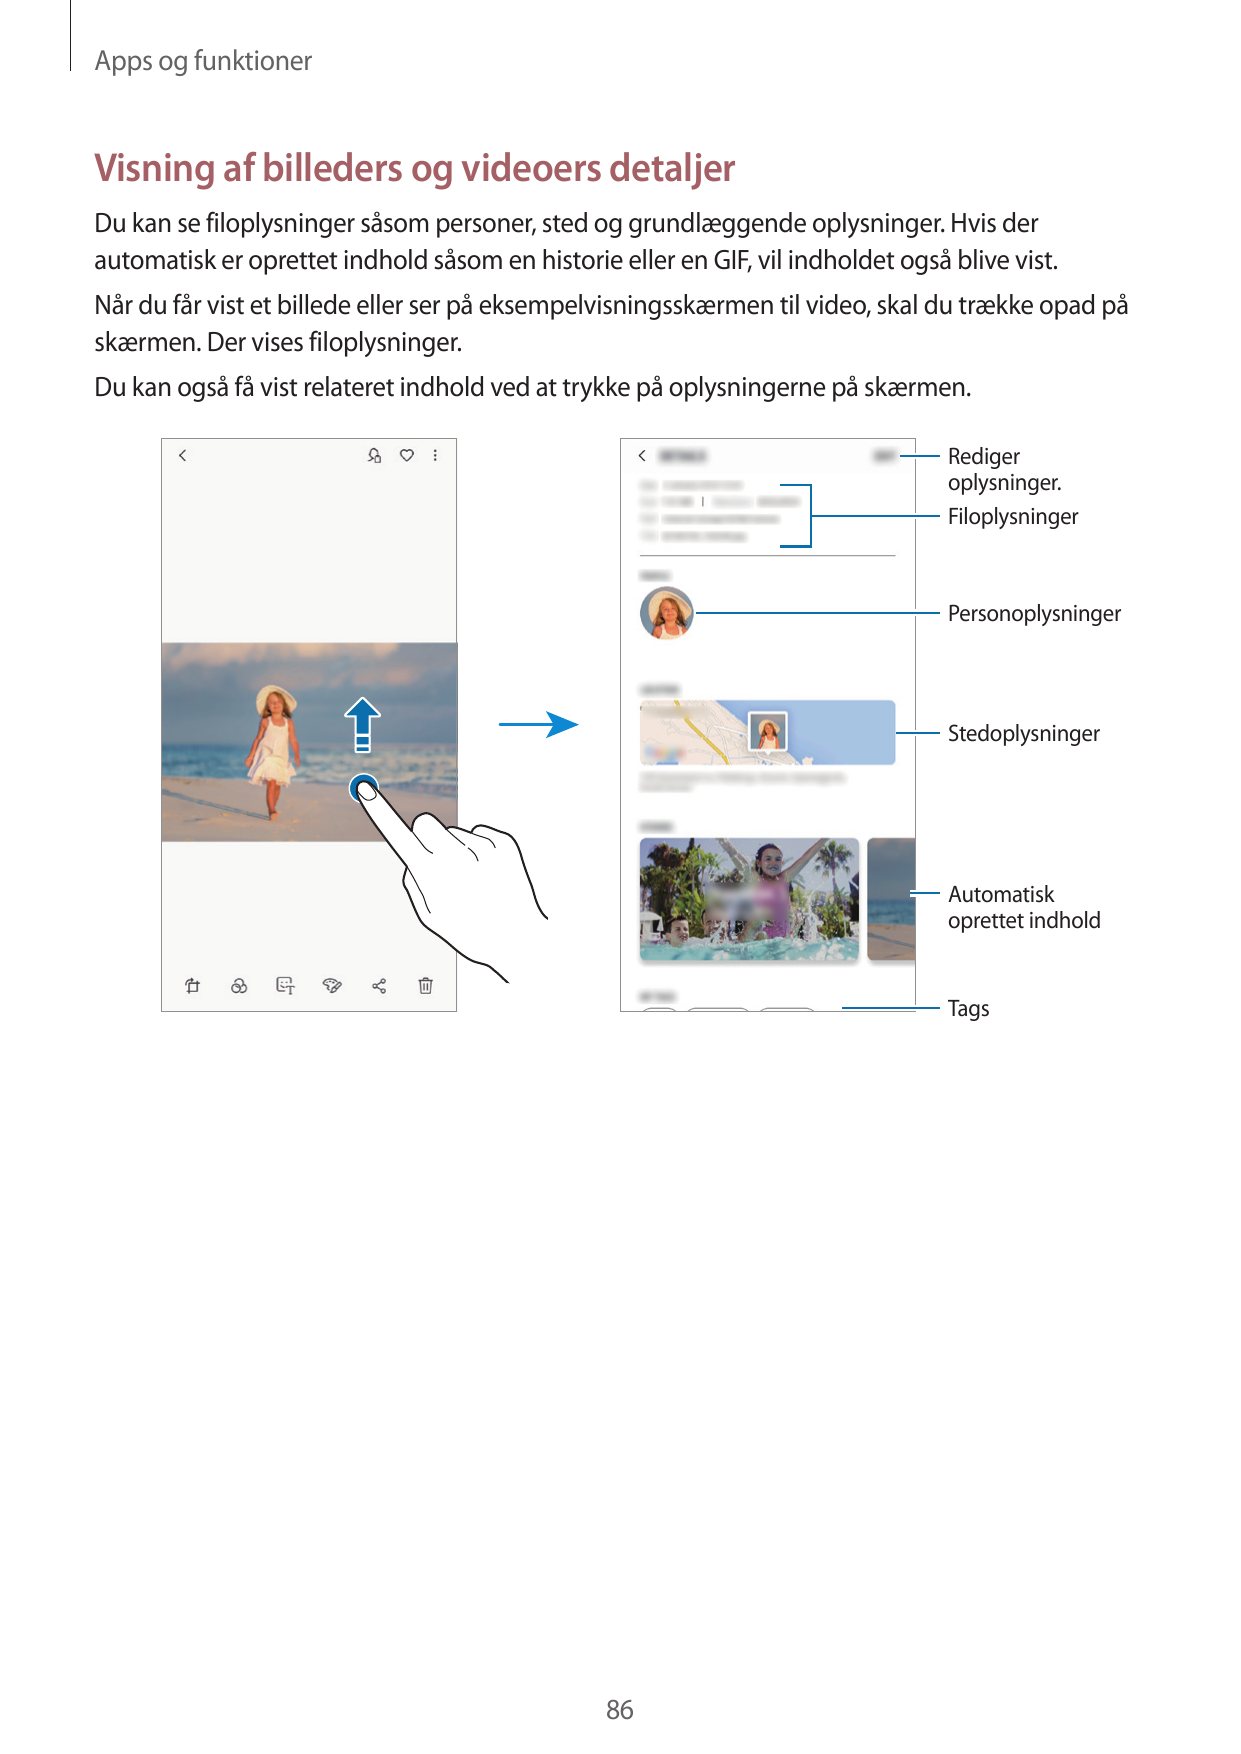 Apps og funktionerVisning af billeders og videoers detaljerDu kan se filoplysninger såsom personer, sted og grundlæggende oplysn